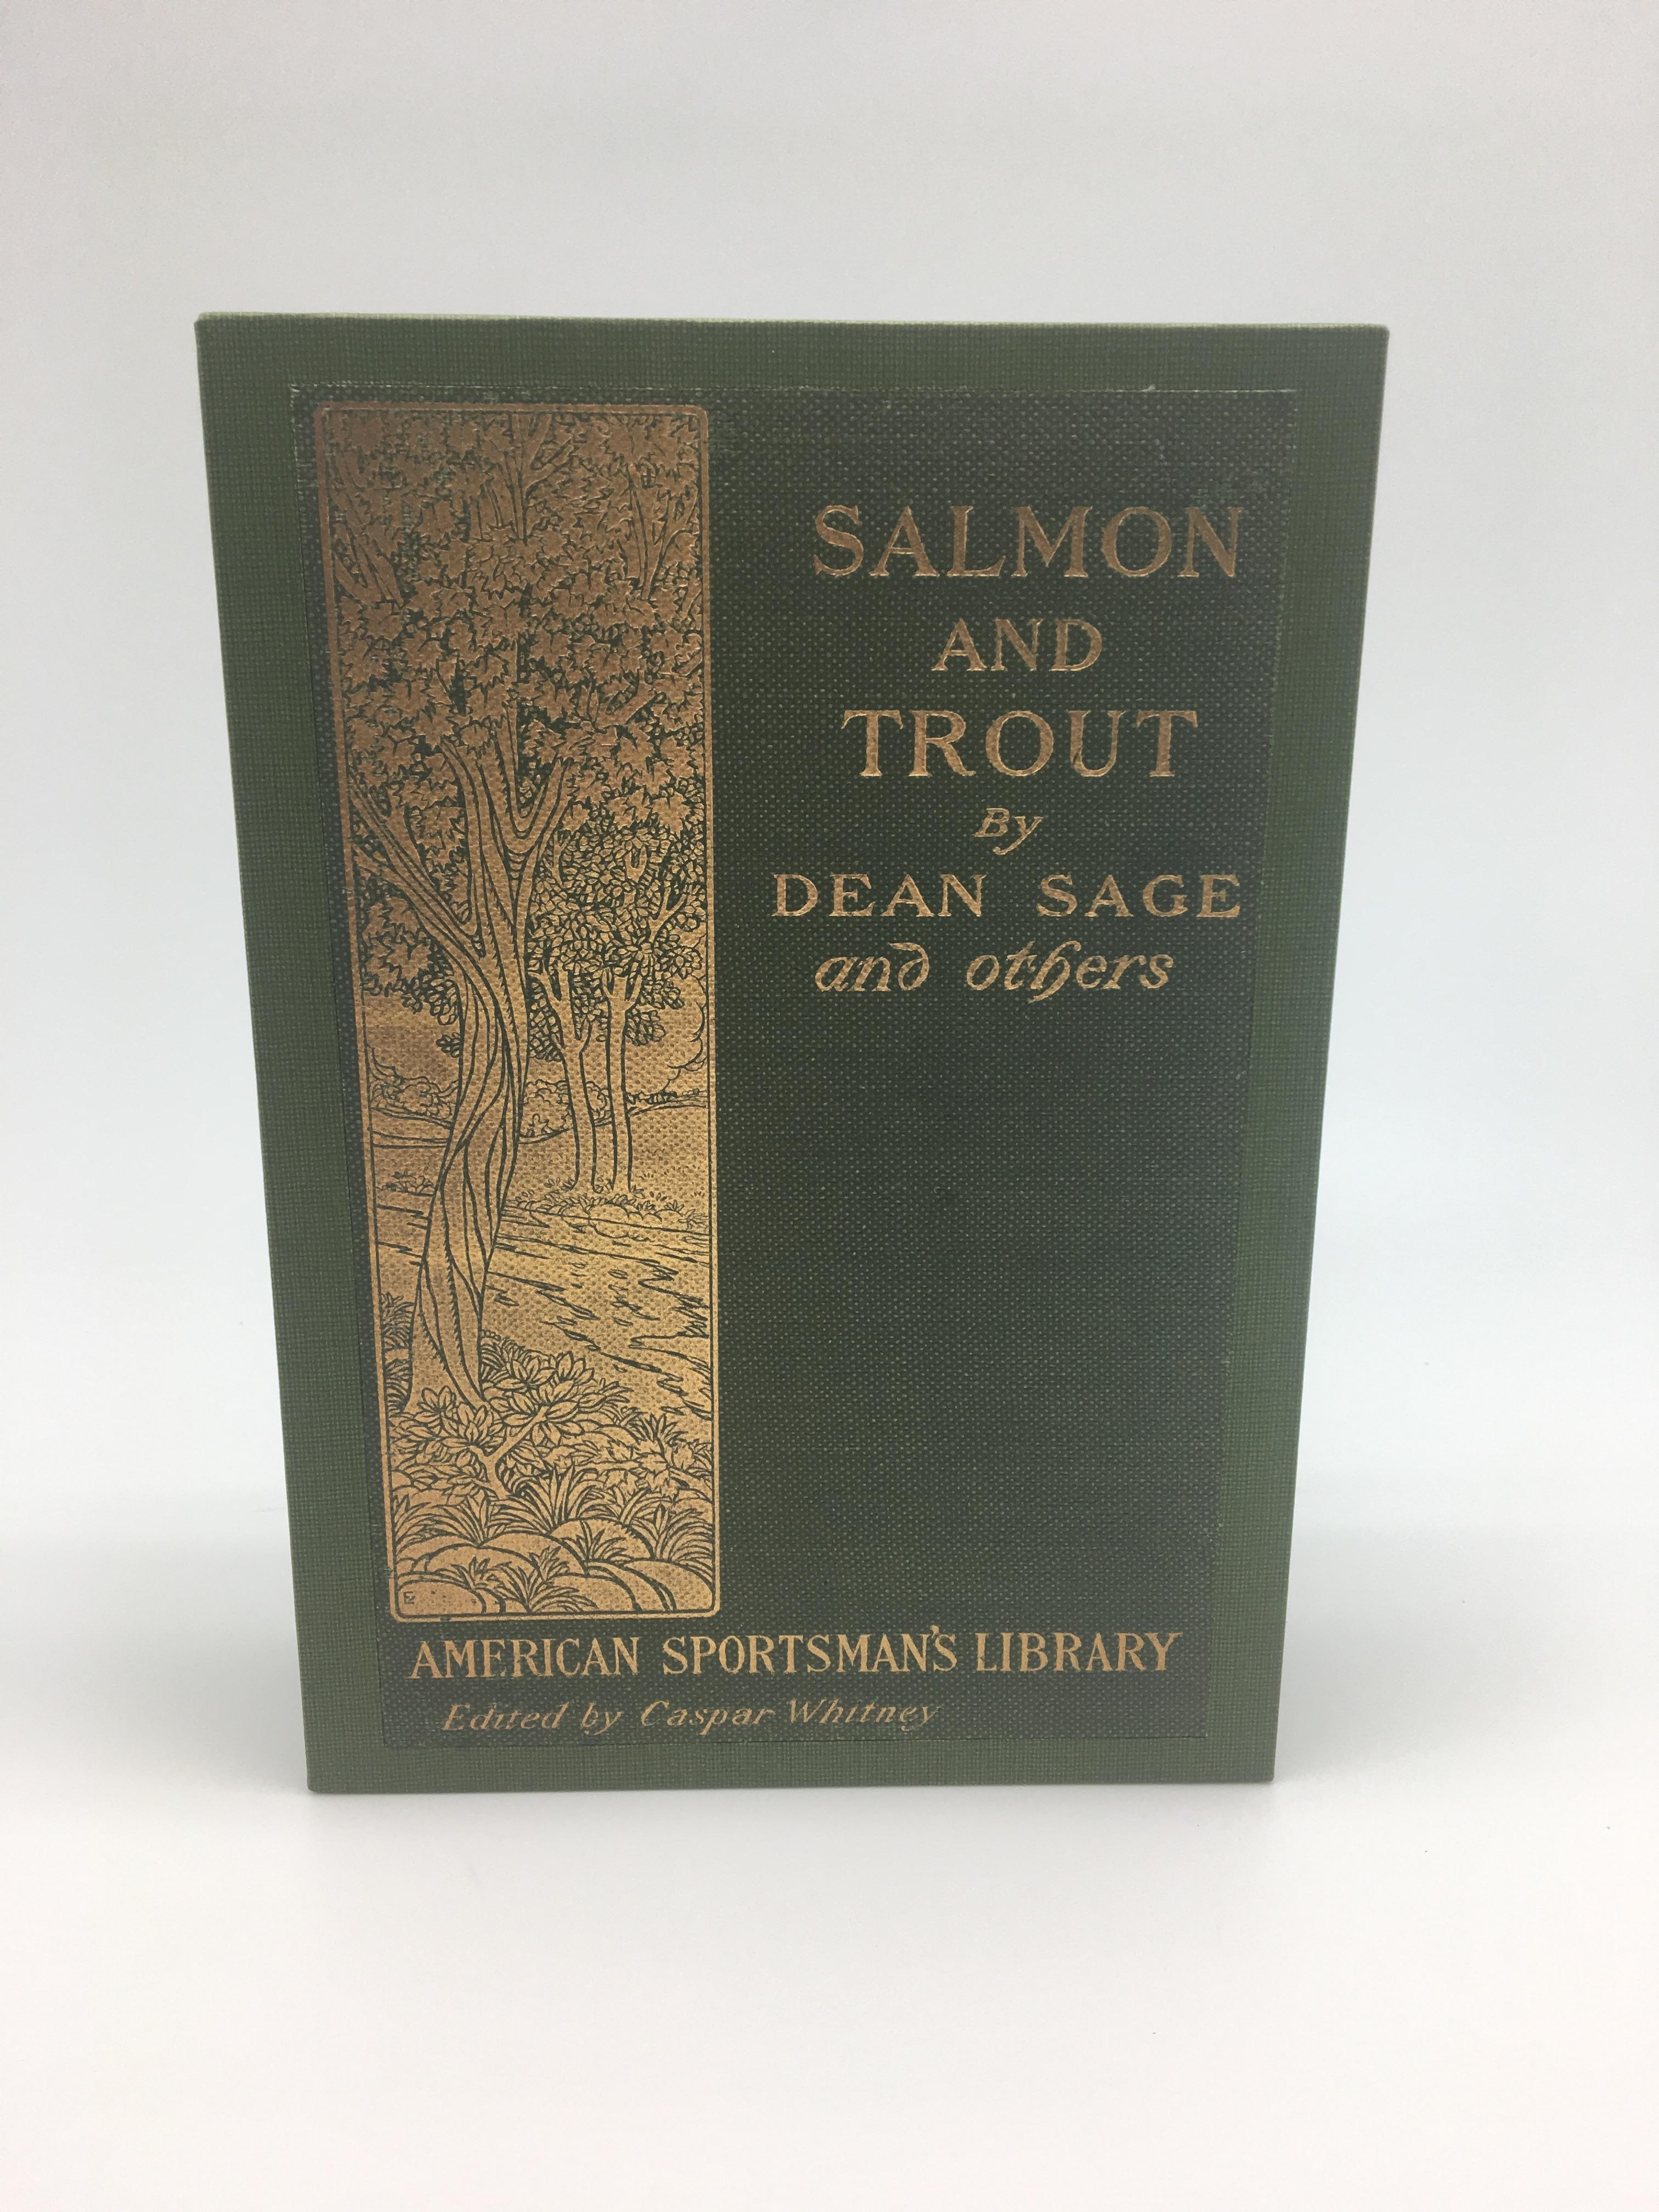 Sage, Deans, Saumon et Truite. New York : Macmillan Co., 1902. Première édition. Octavo, reliure en toile verte et quart de cuir. Présenté dans un étui assorti avec la couverture d'origine collée.

Il s'agit de la première édition de Salmon and